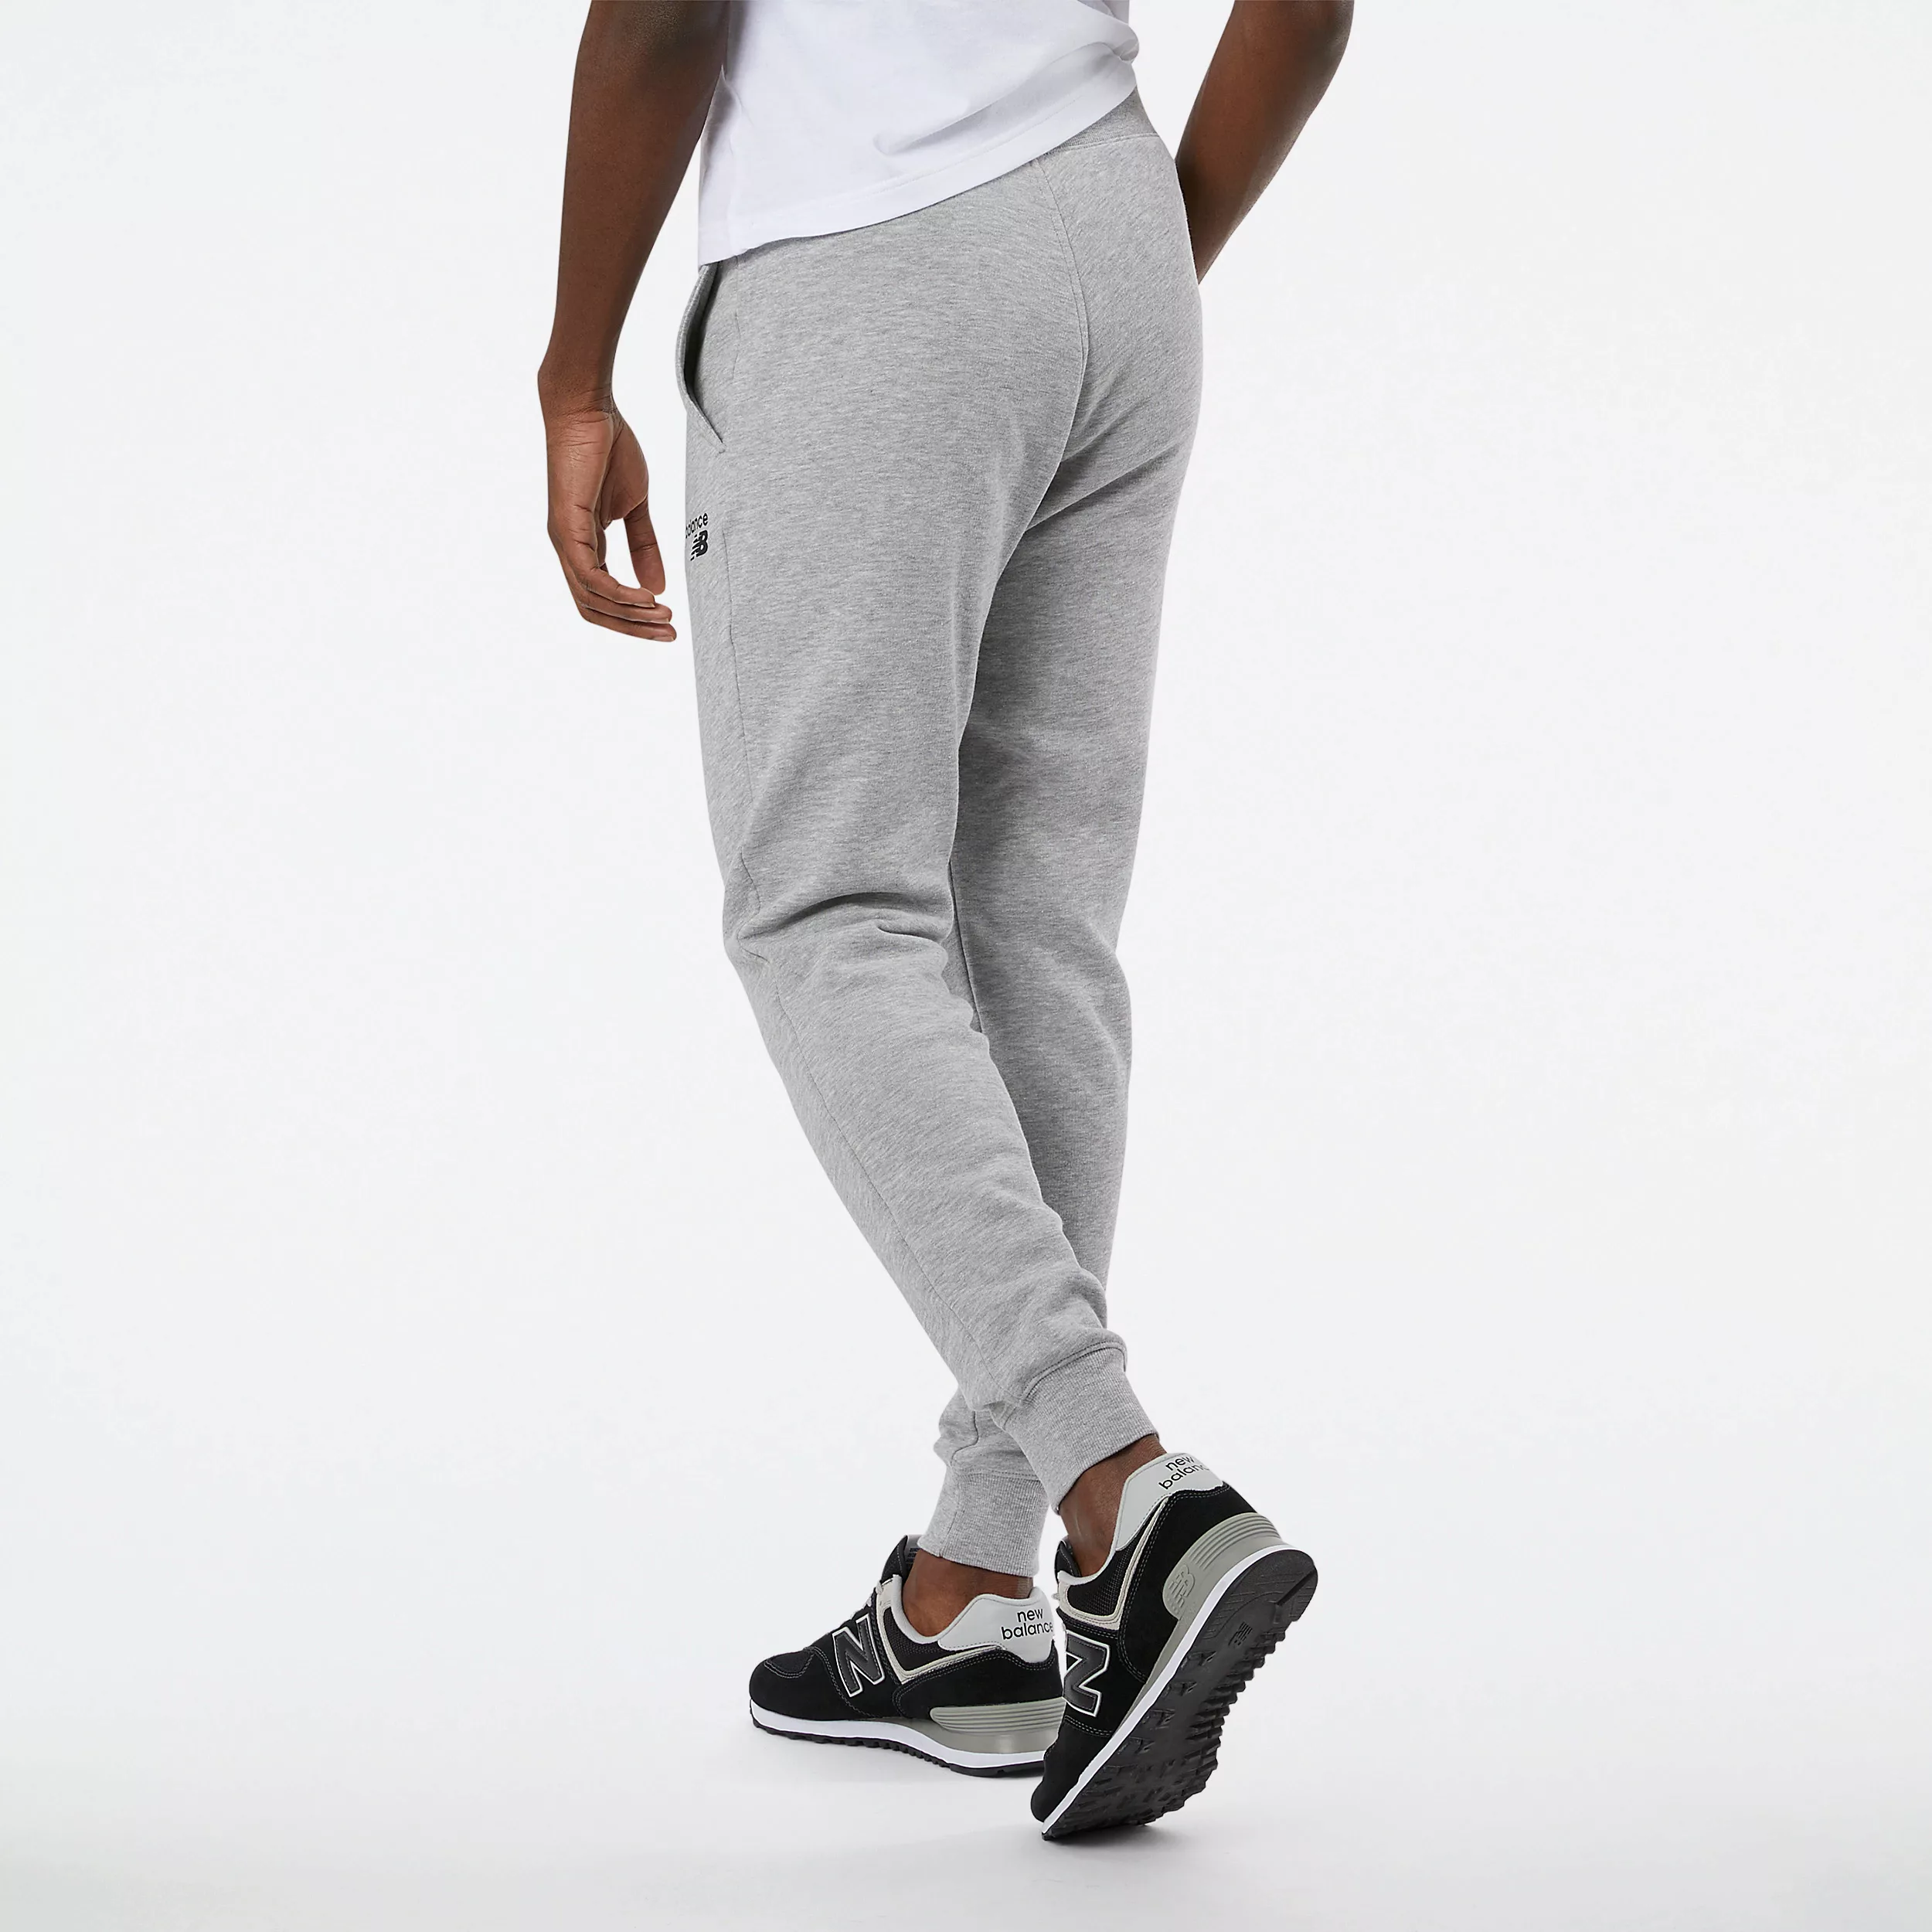 New Balance Classic Core Pullover M Grey günstig online kaufen